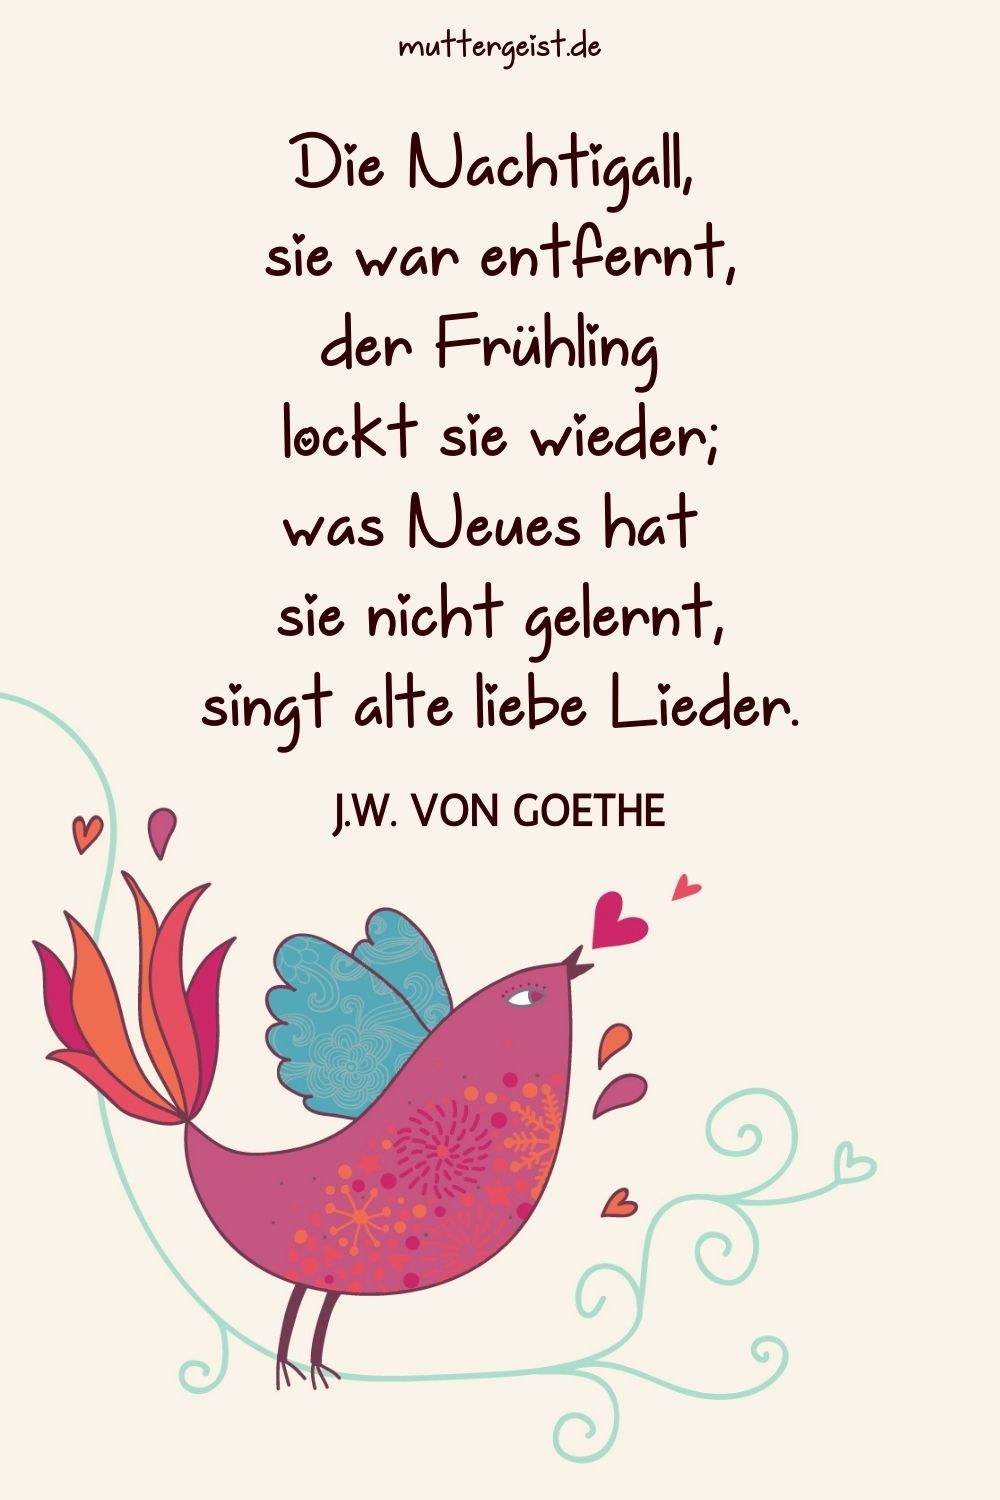 Johann Wolfgang von Goethes Gedicht über die Nachtigall auf einem mit einem Vogel illustrierten Hintergrund